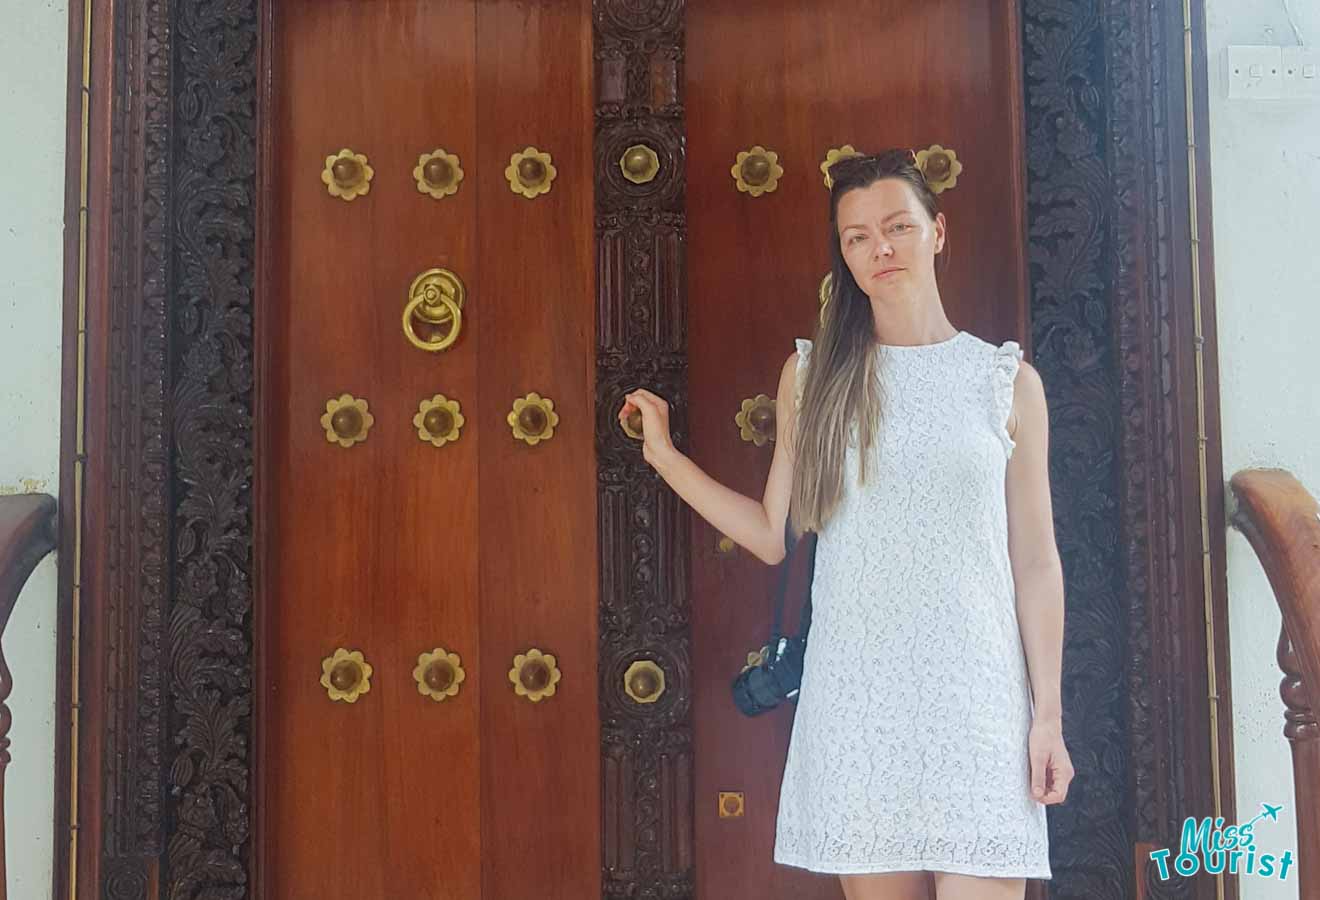 Zanzibar doors